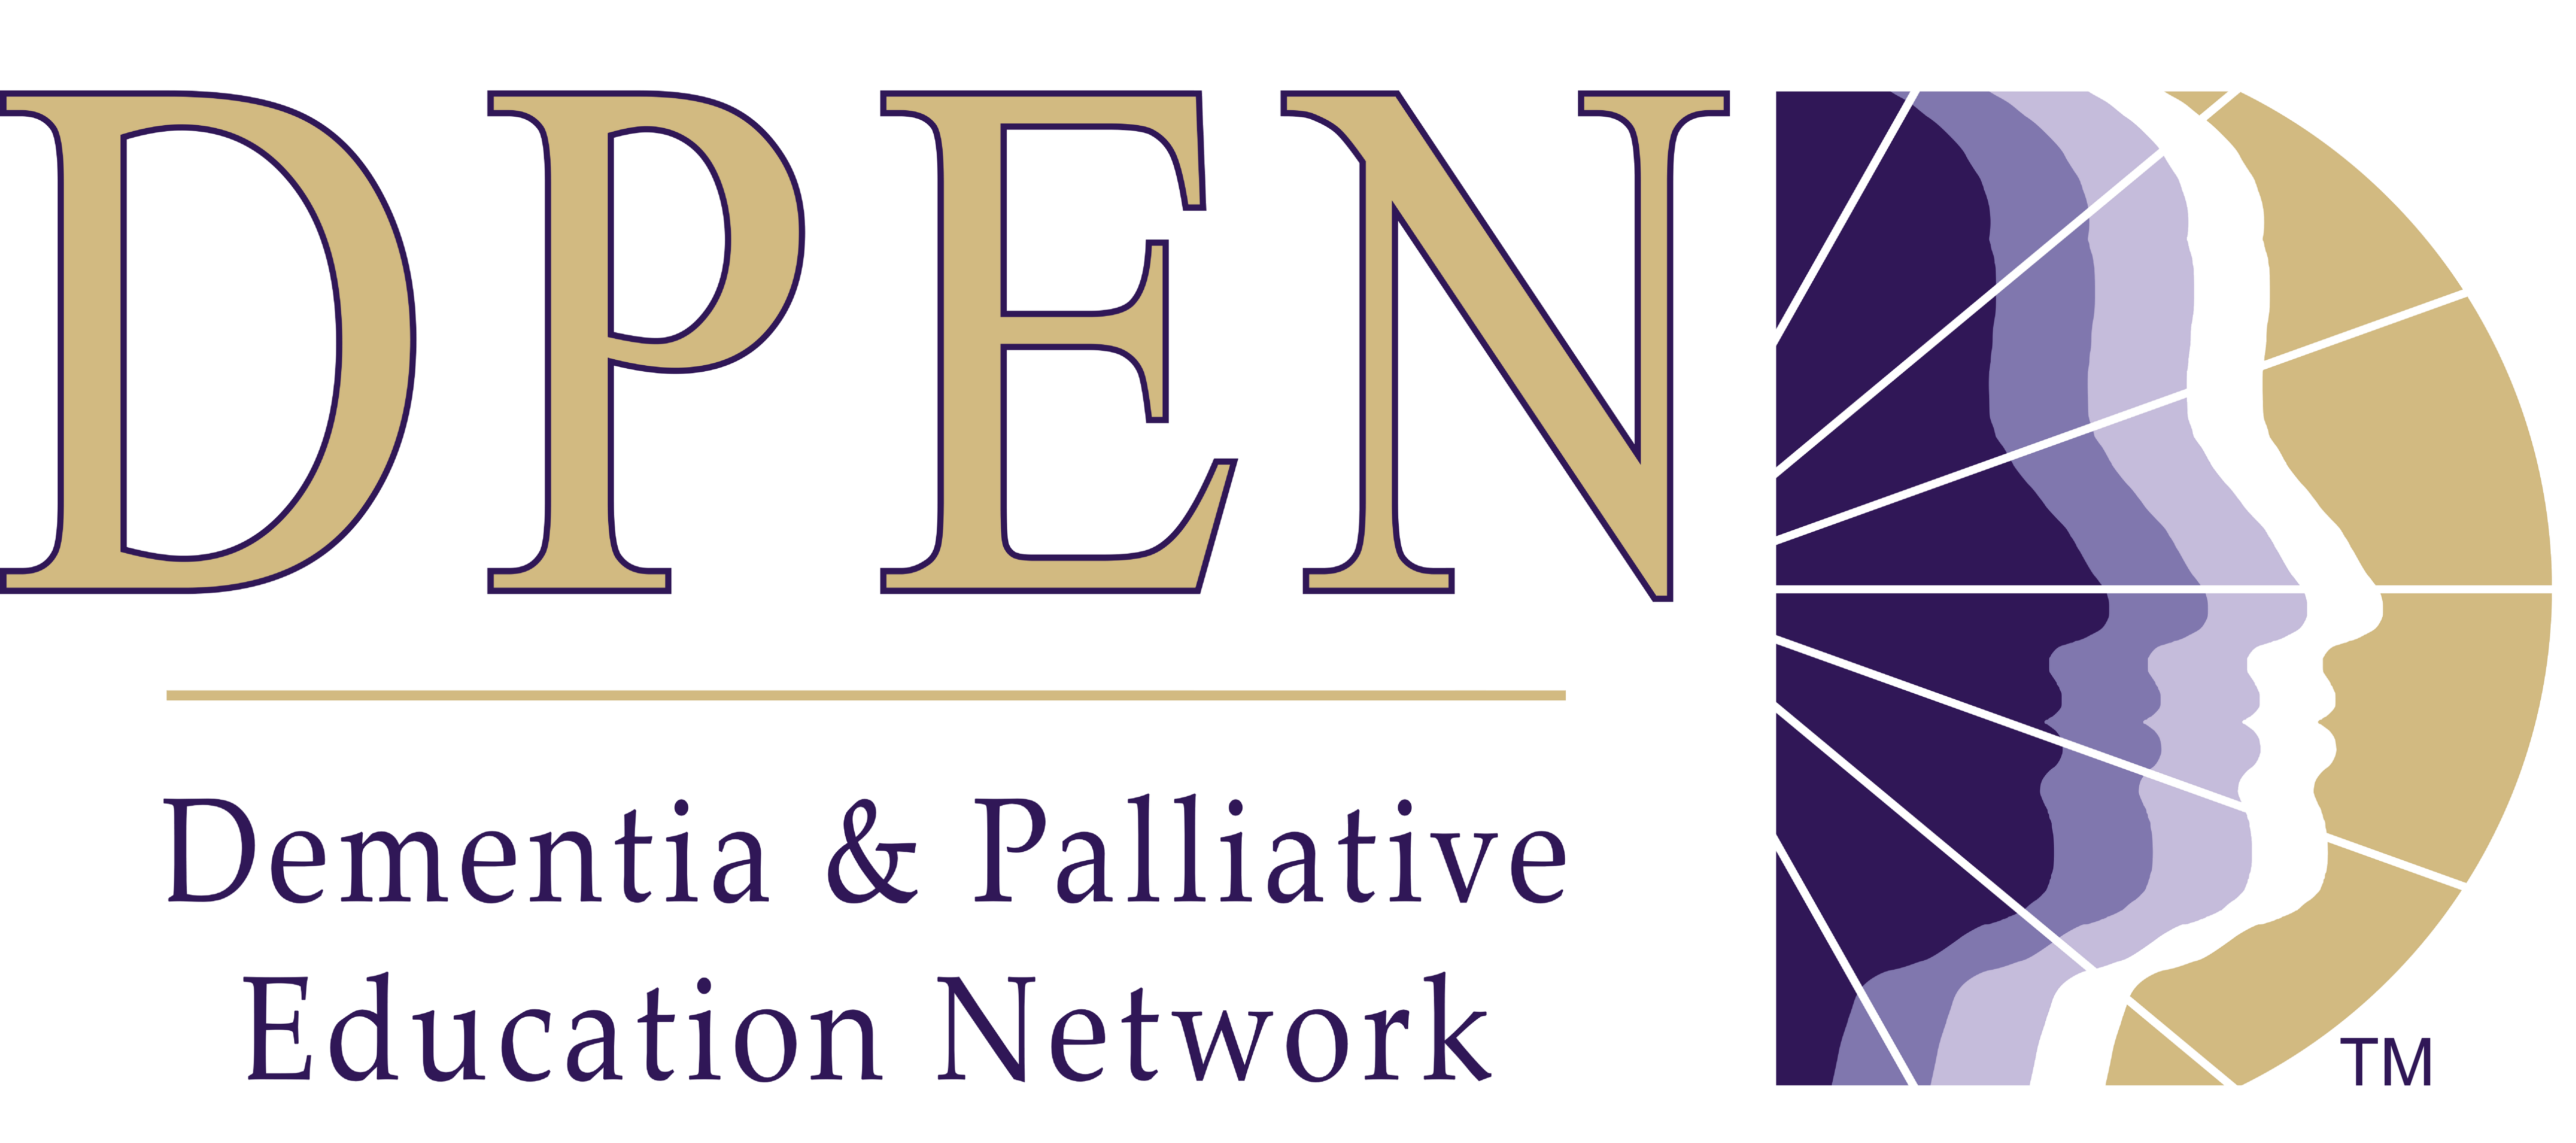 Dementia & Palliative Education Network